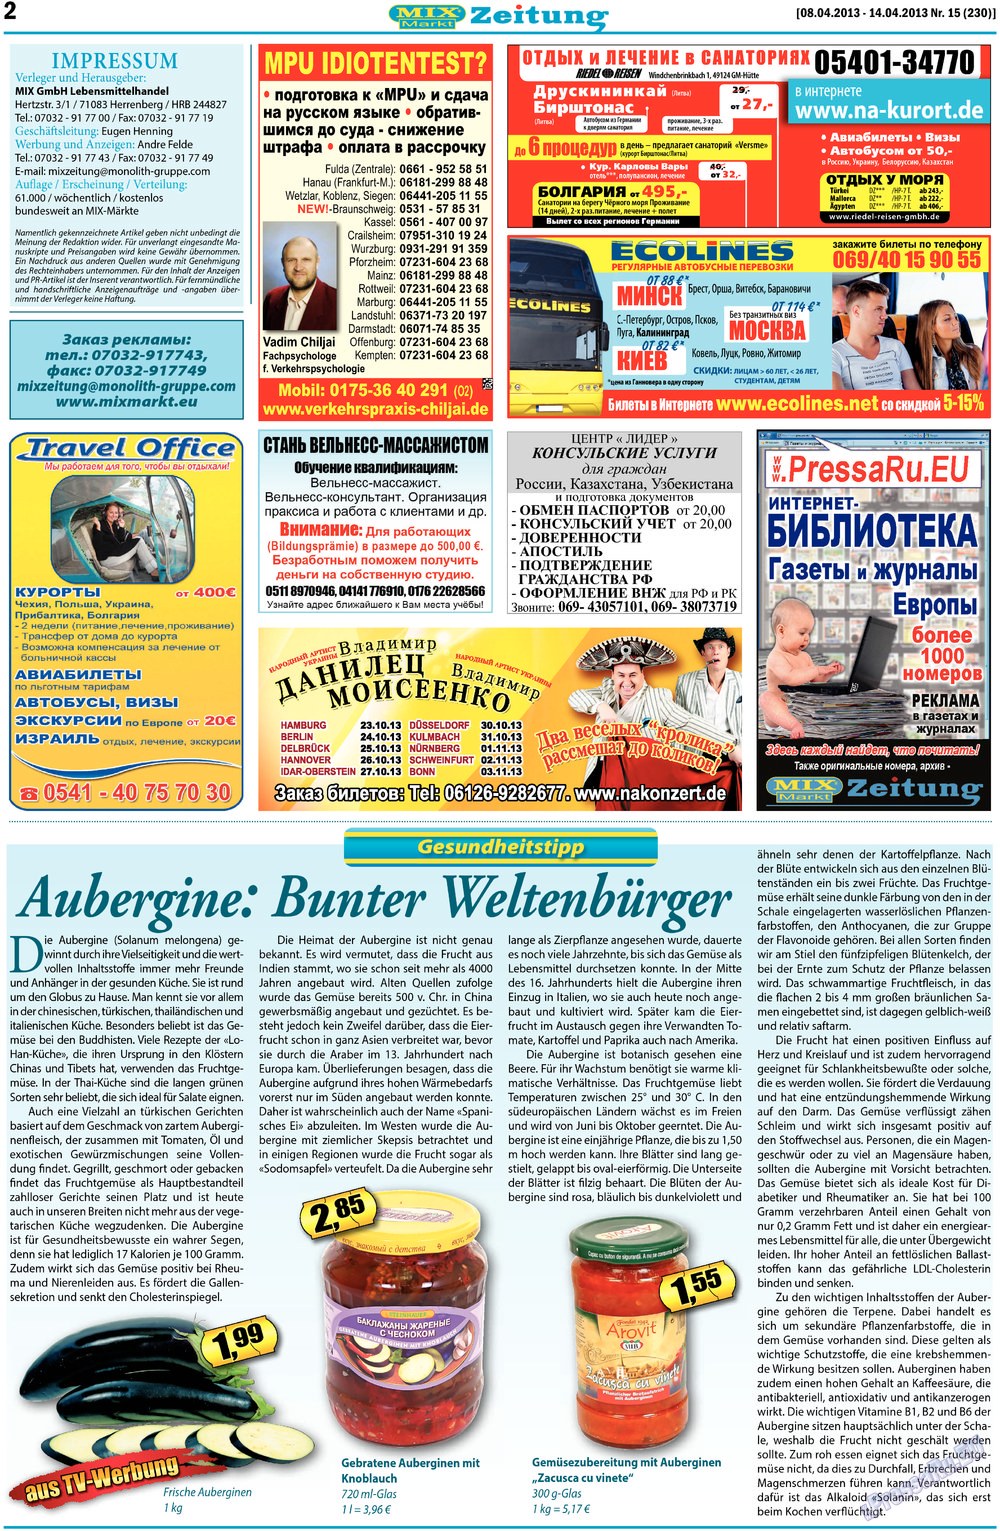 MIX-Markt Zeitung (газета). 2013 год, номер 15, стр. 2